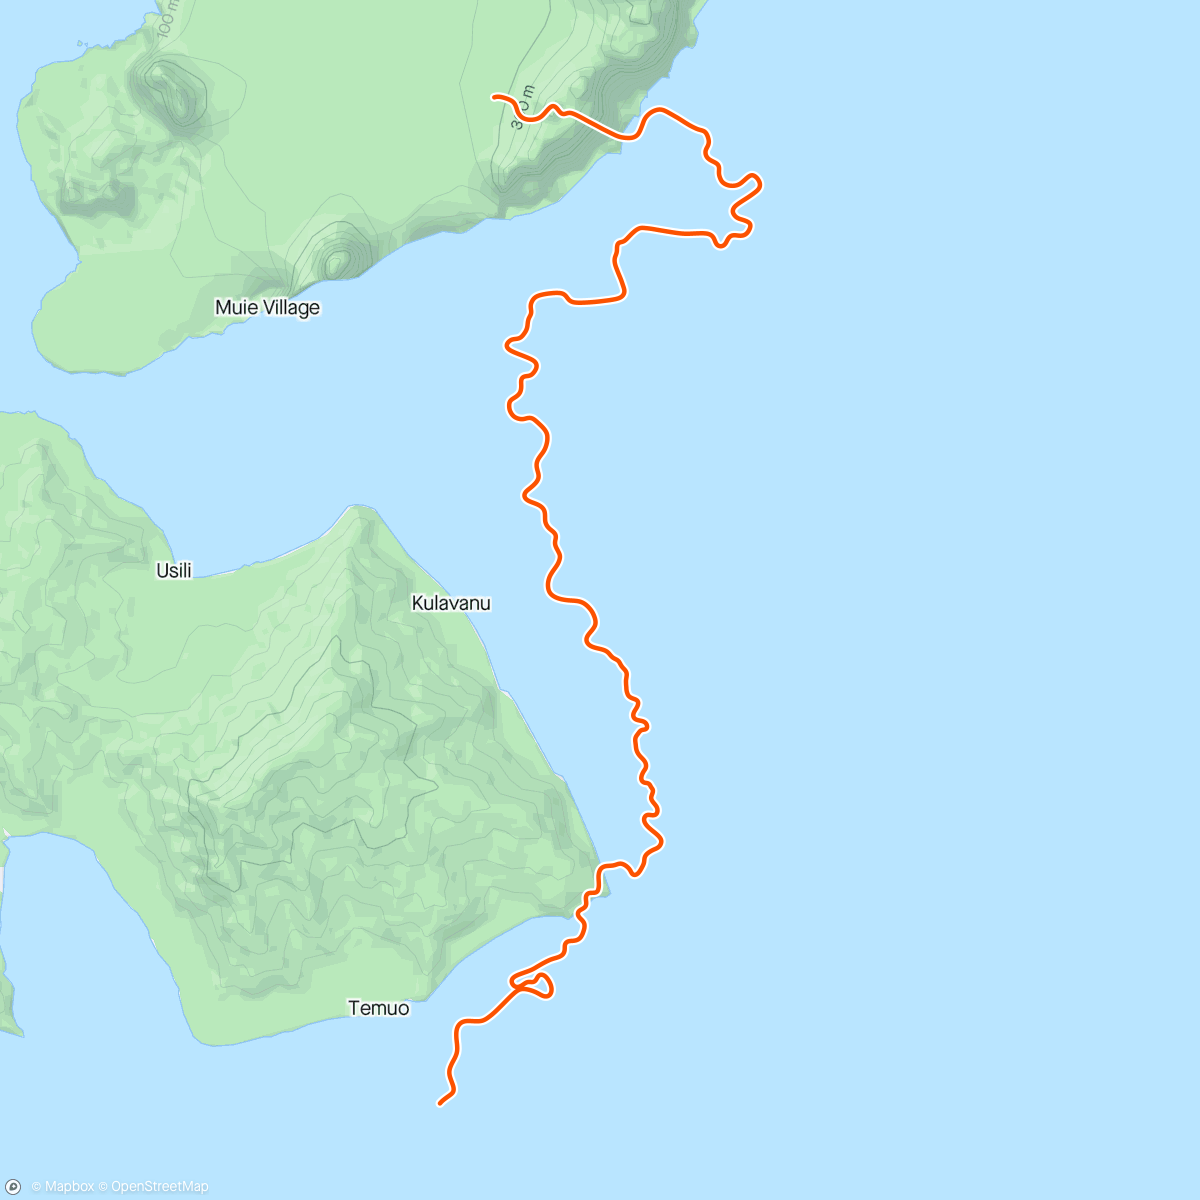 アクティビティ「R2tS5 T-14 B3W1D6 - RAT 0,7hrs 17km Zwift - #100daysofexercise Day49 - Going Coastal in Watopia」の地図